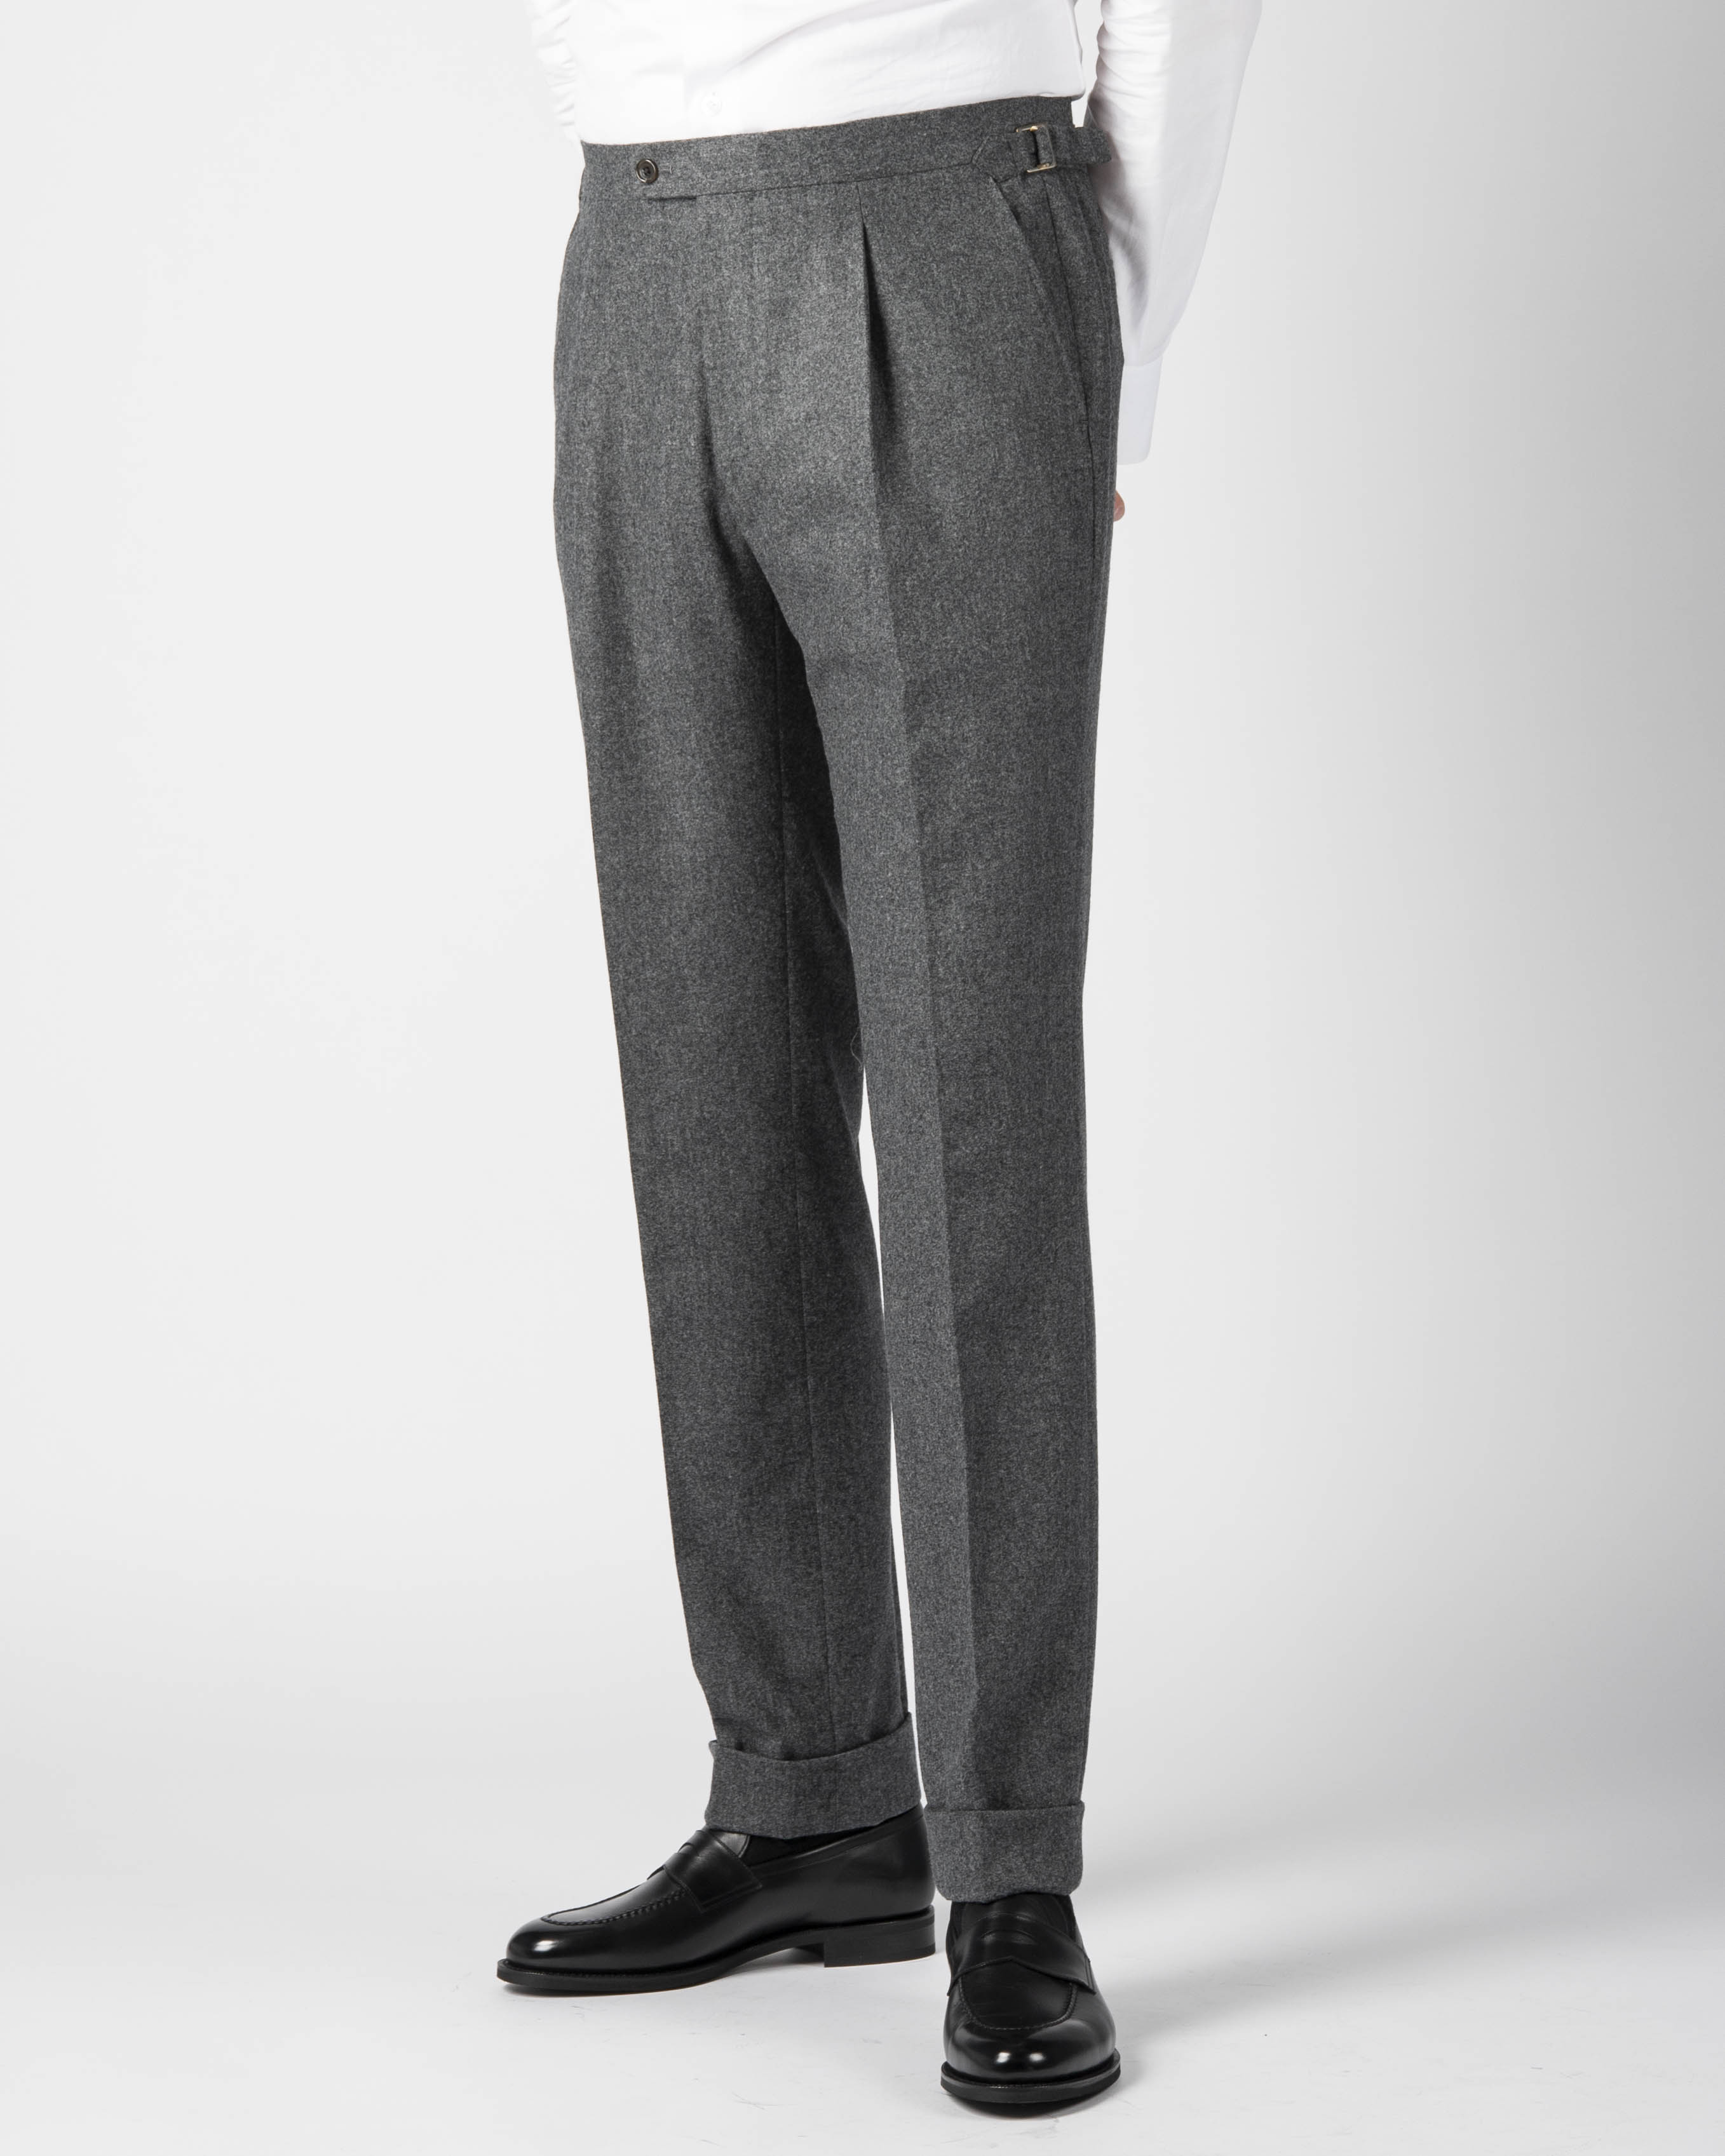 89 Best Grey flannel trousers ideas  grey flannel trousers grey flannel  mens fashion